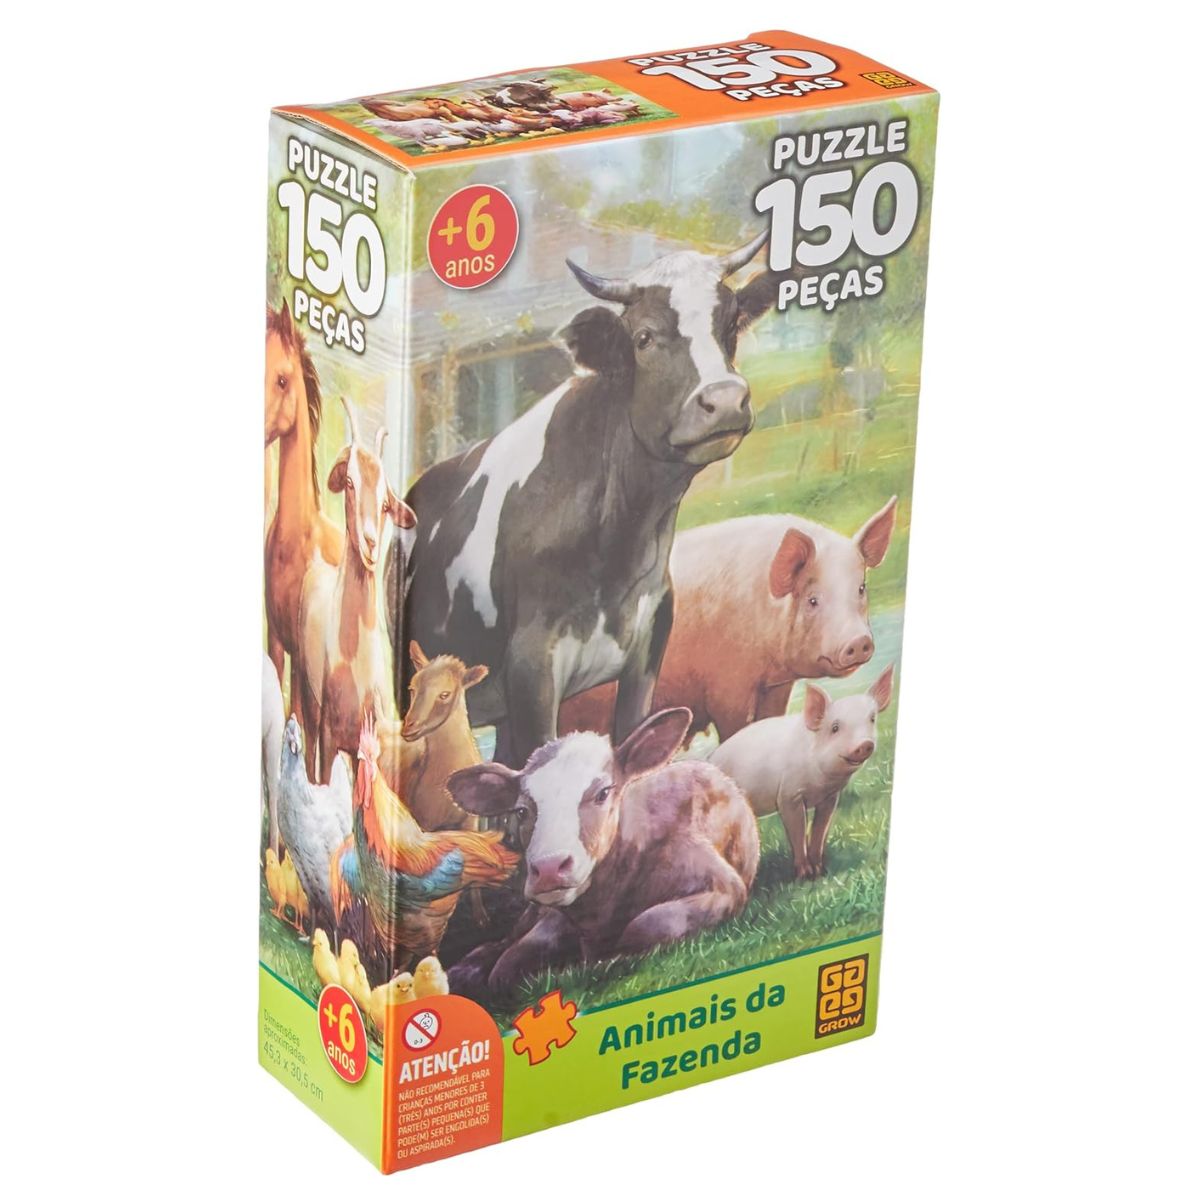 Puzzle 150 peças Animais da Fazenda - Loja Grow